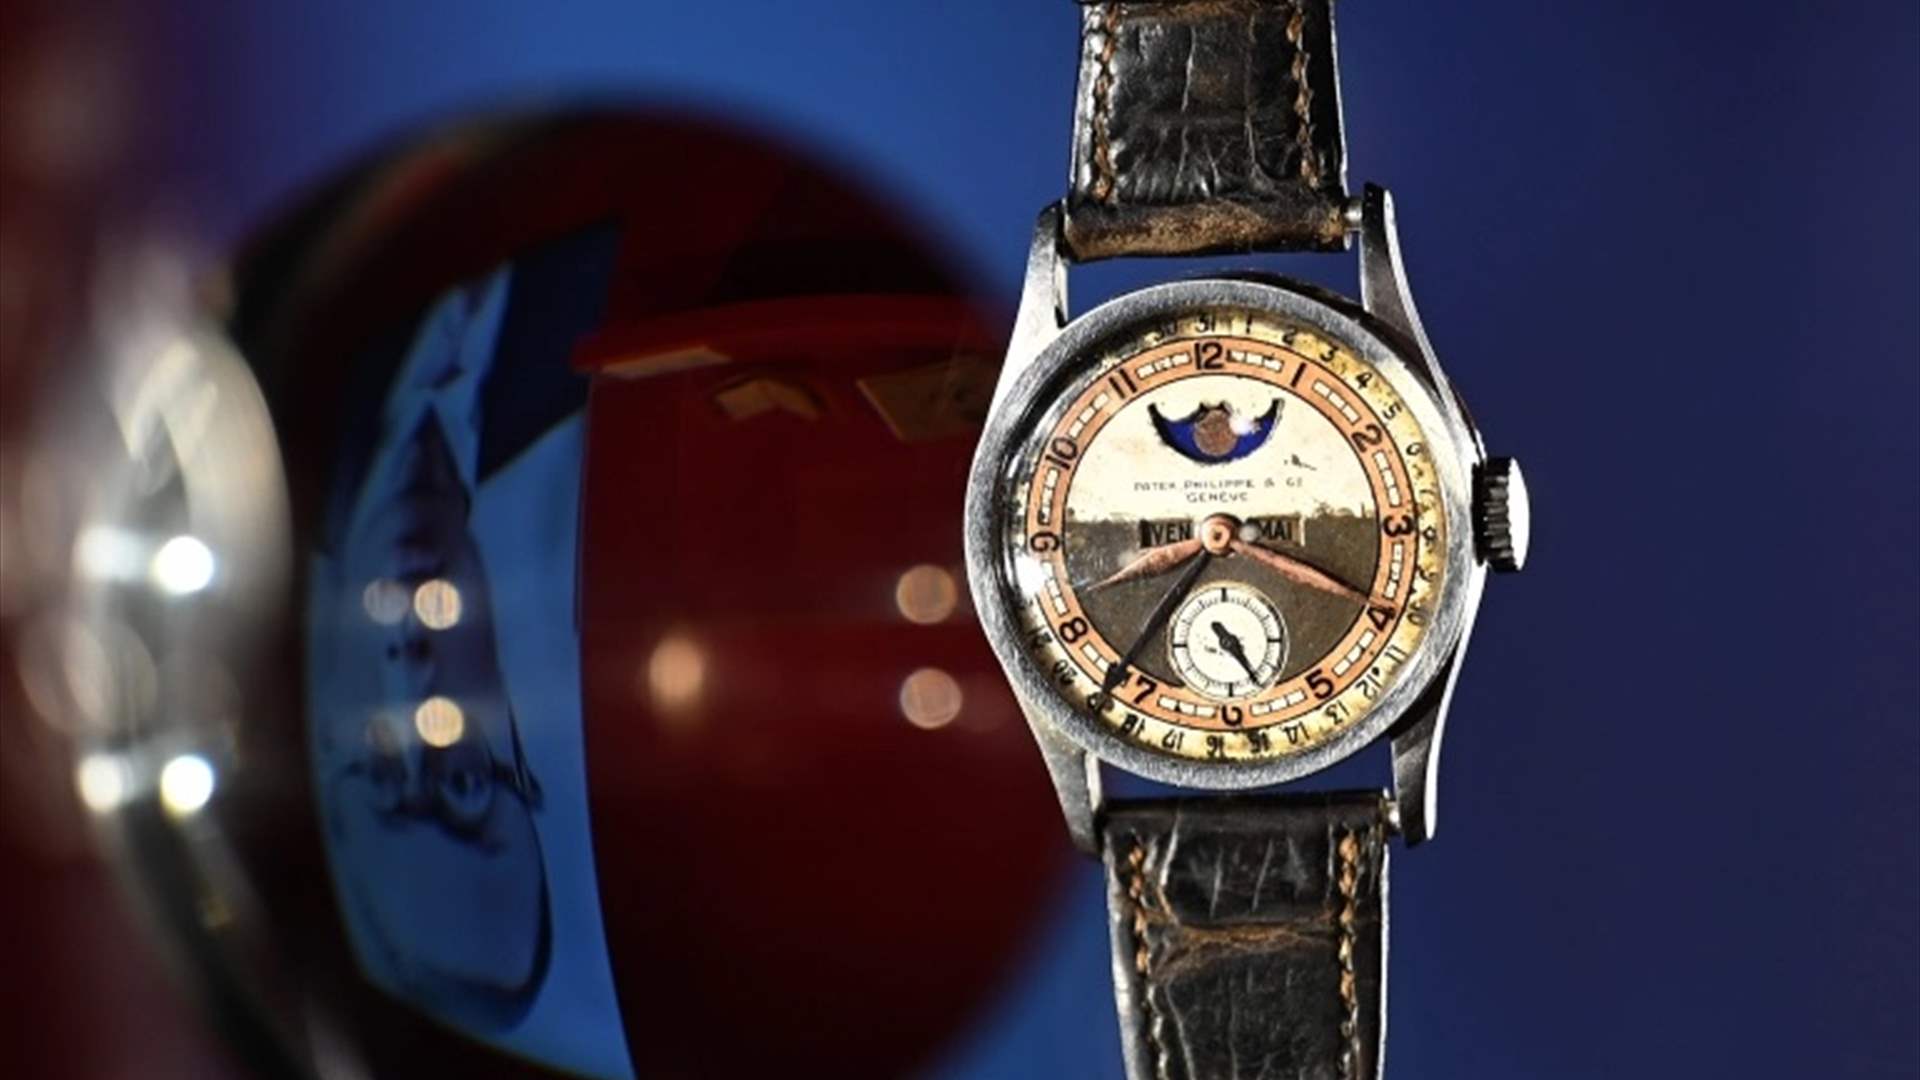 مقابل مبلغ خيالي... بيع ساعة لآخر امبراطور صيني في مزاد